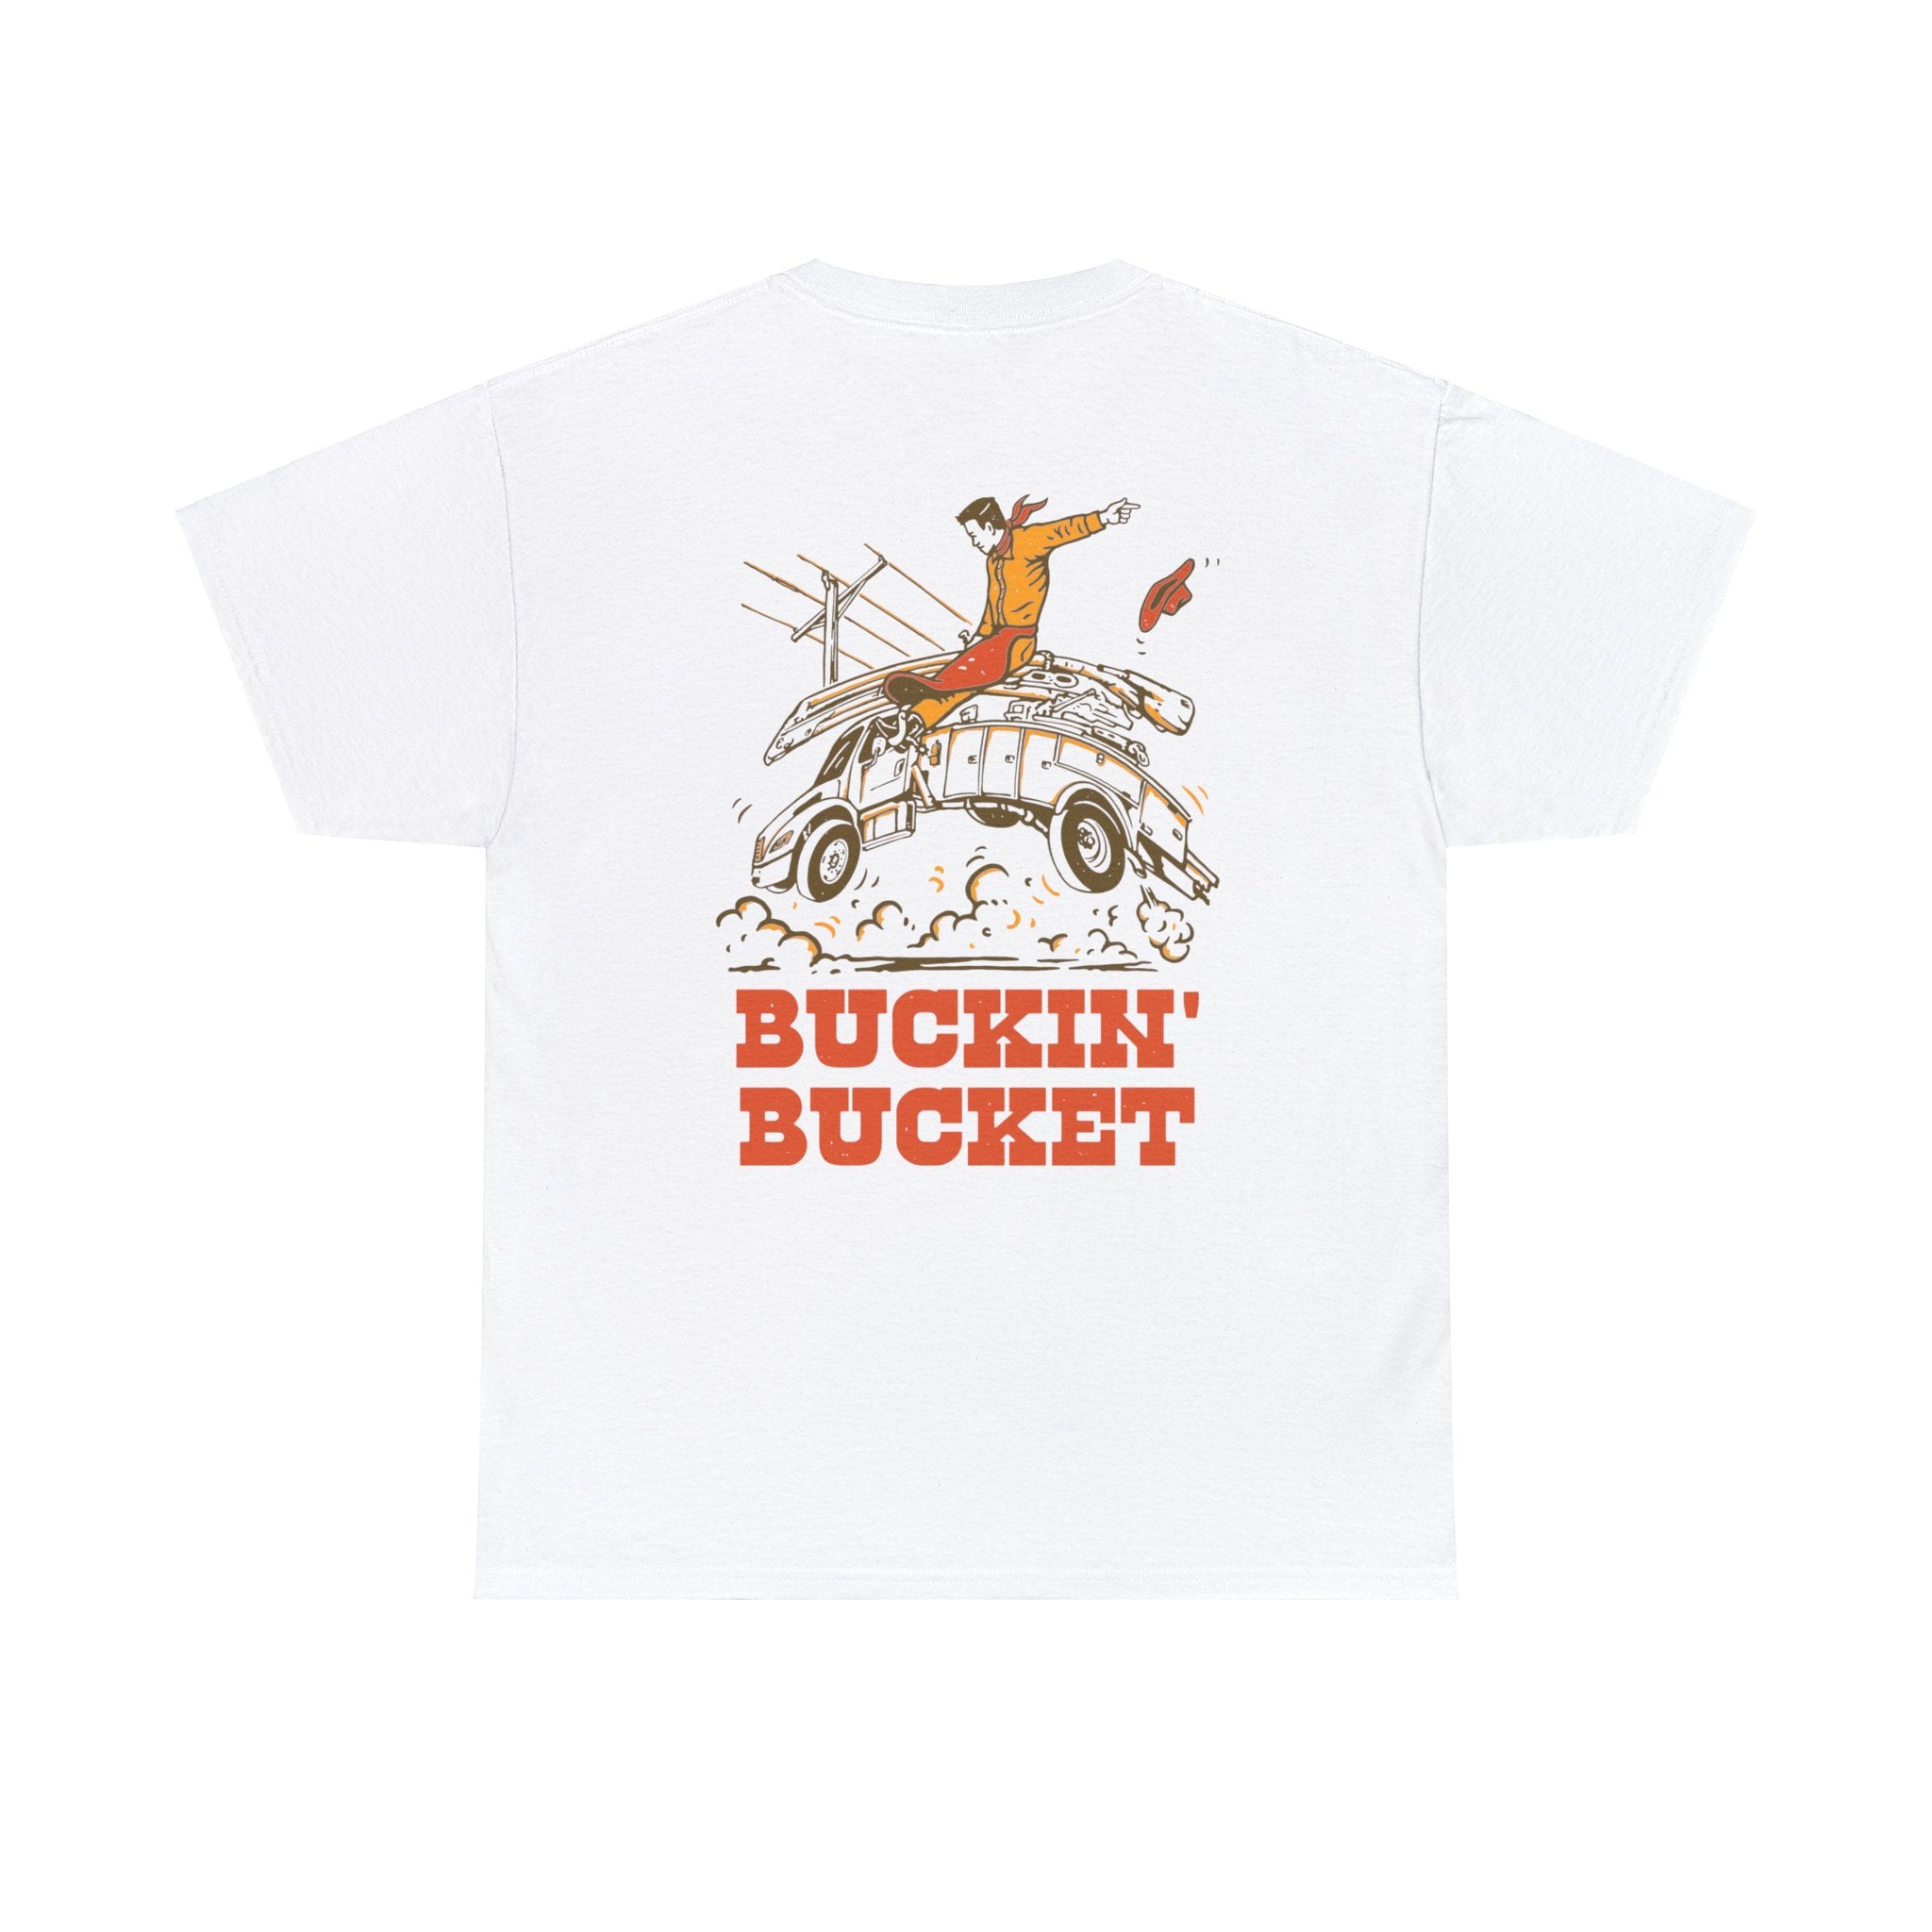 Buckin' Bucket